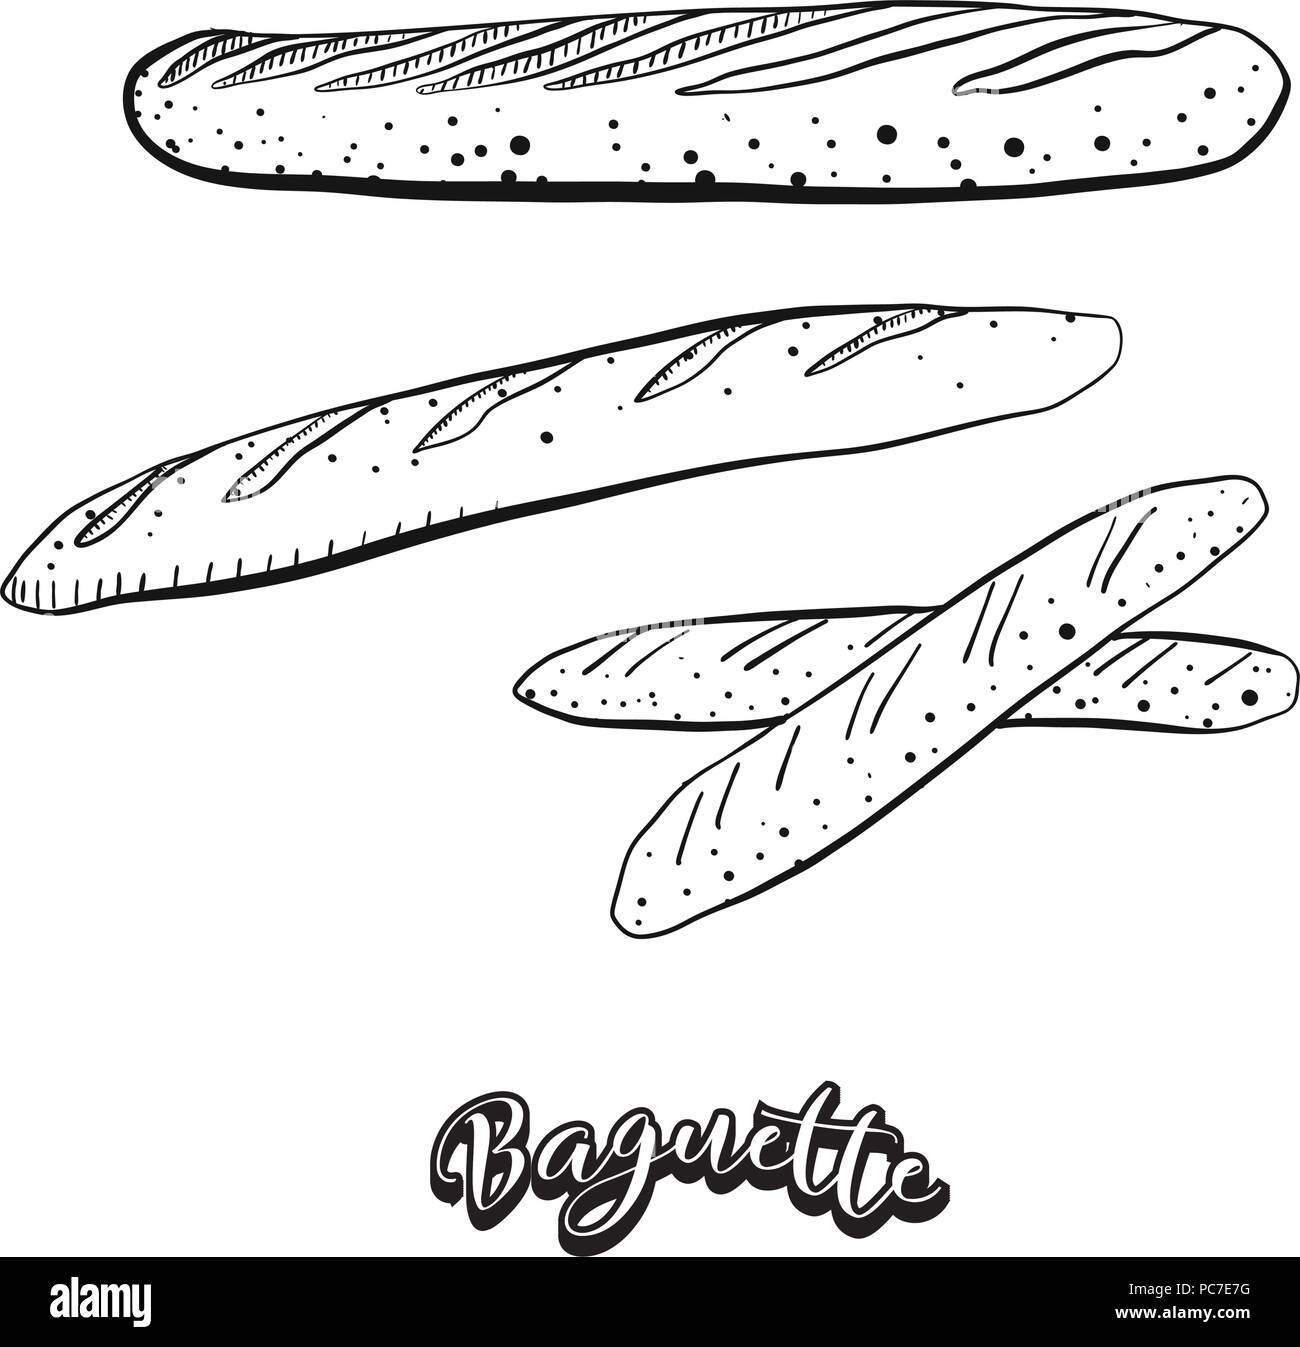 Croquis dessinés à la main de pain baguette de la nourriture. Dessin vectoriel de la levure alimentaire pain, généralement connue en France. Illustration du pain series. Illustration de Vecteur